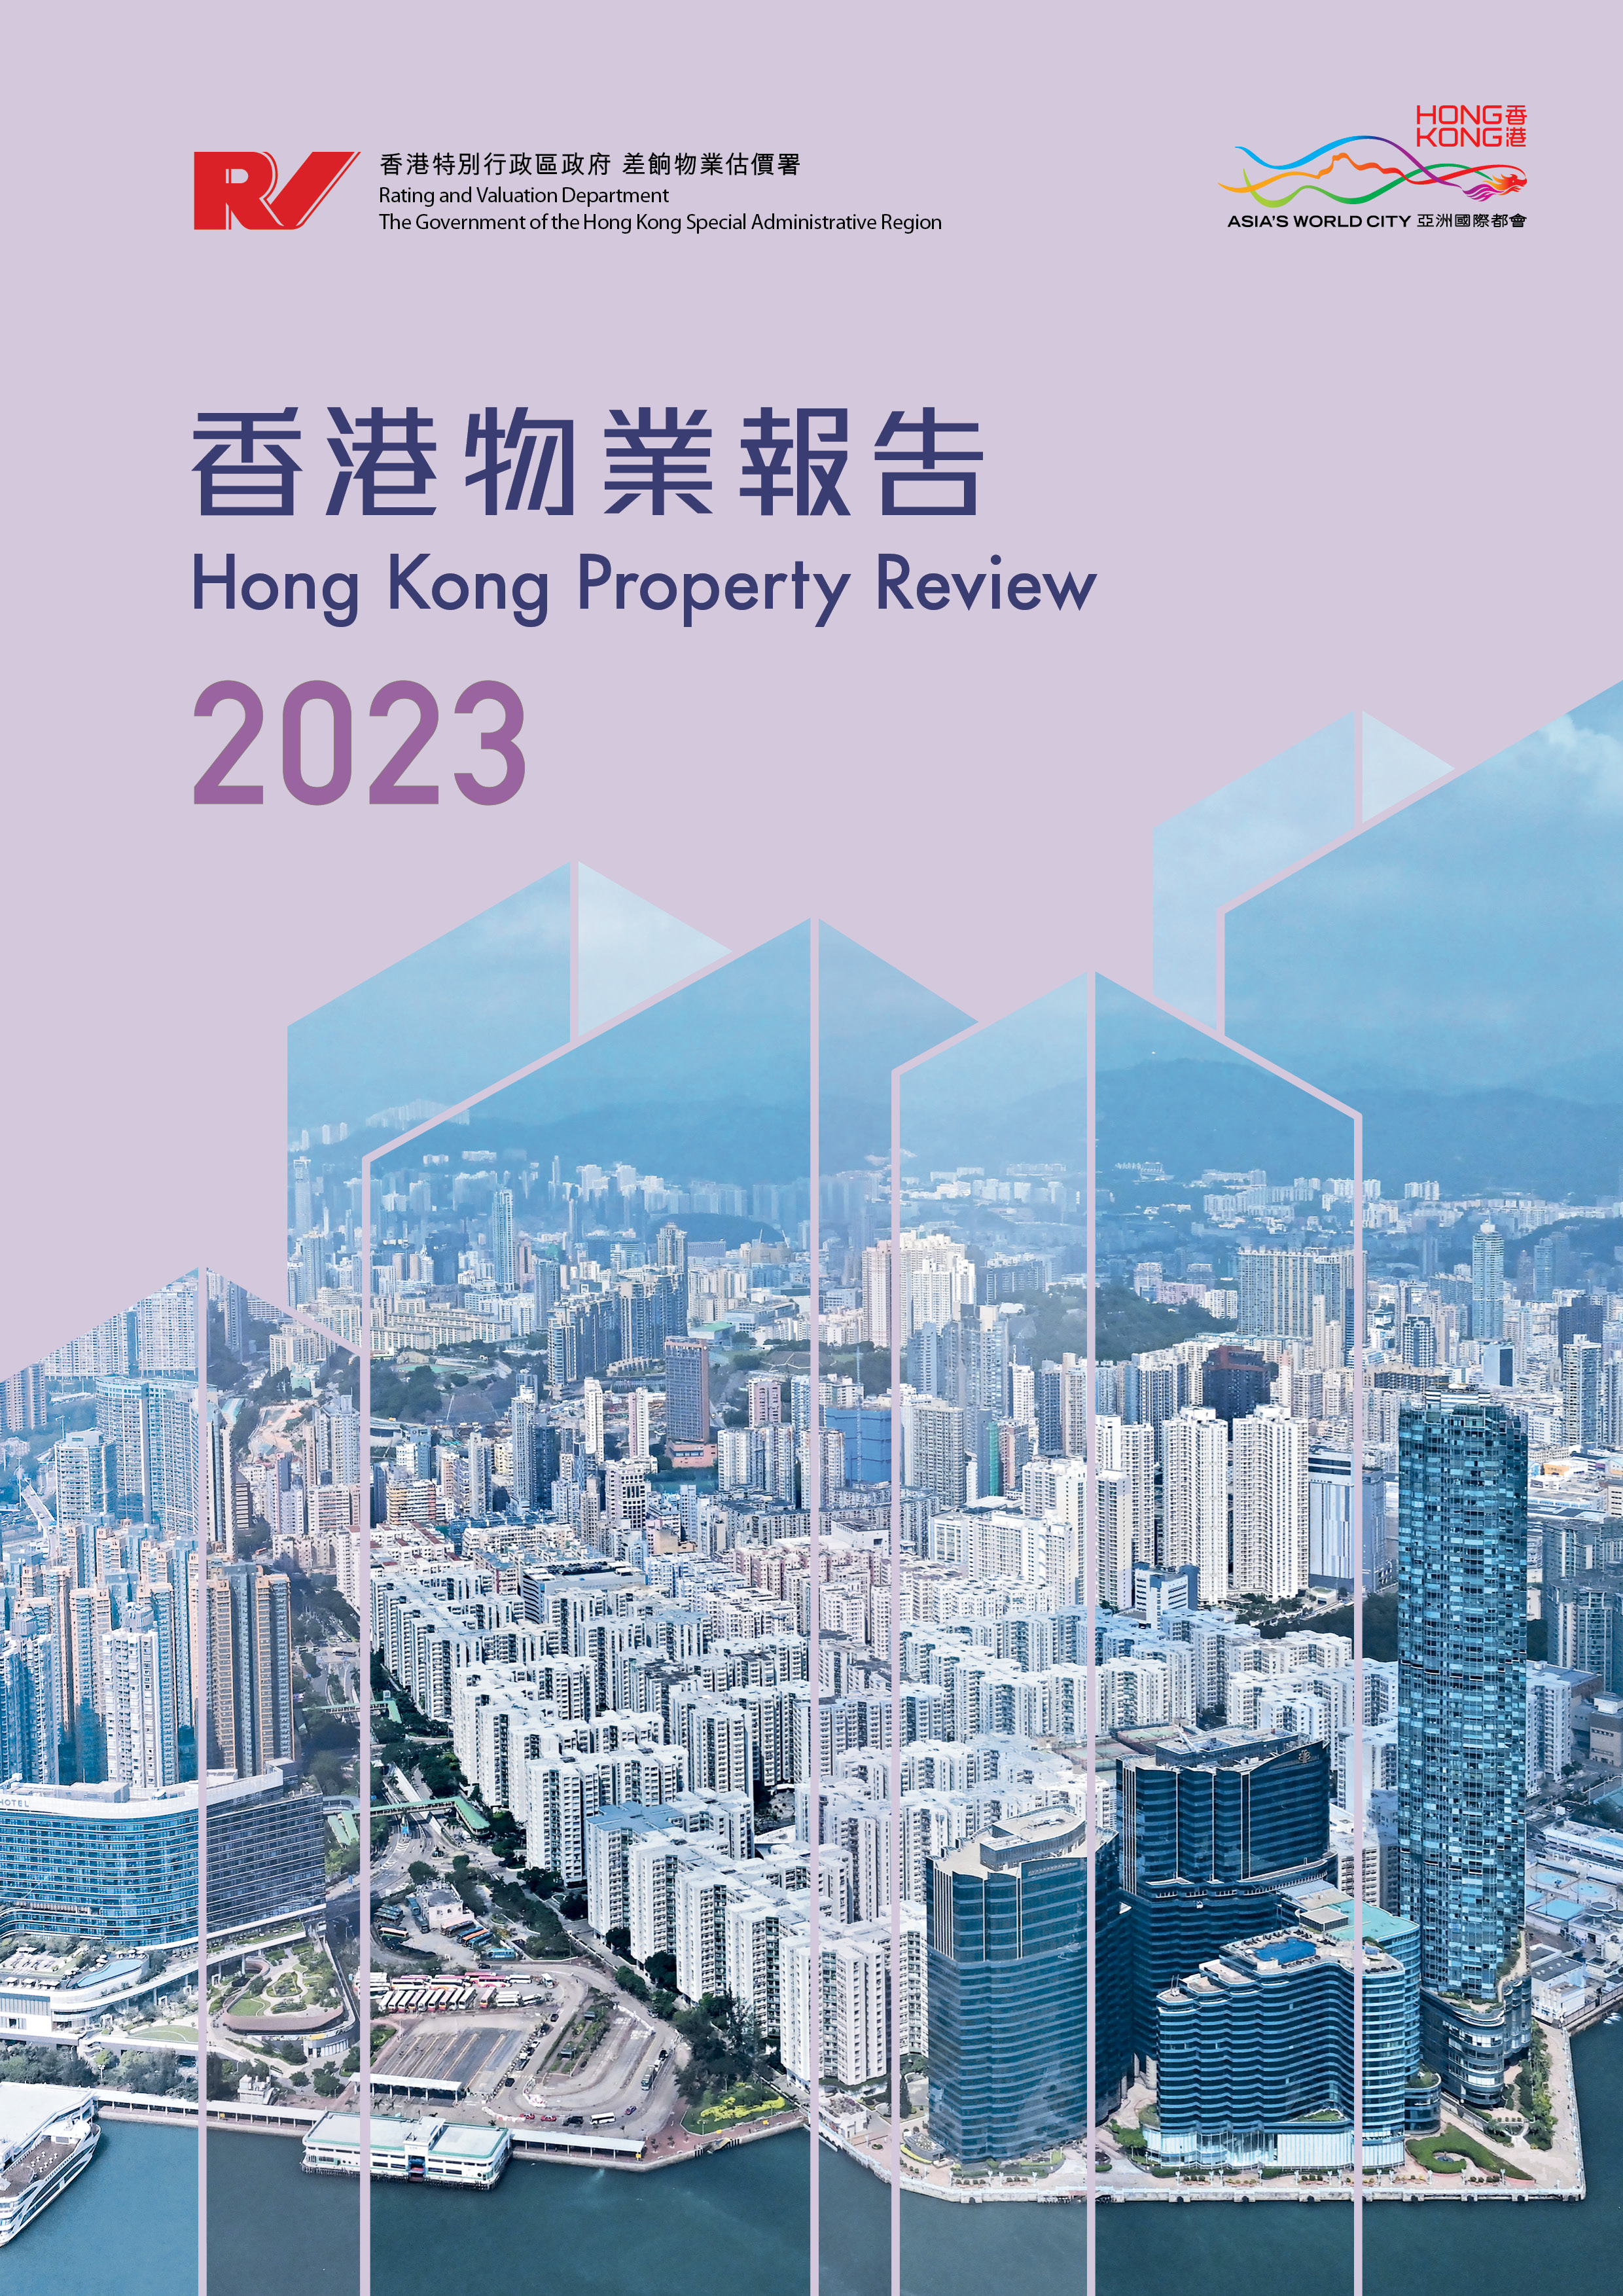 Hong Kong Property Review 2023